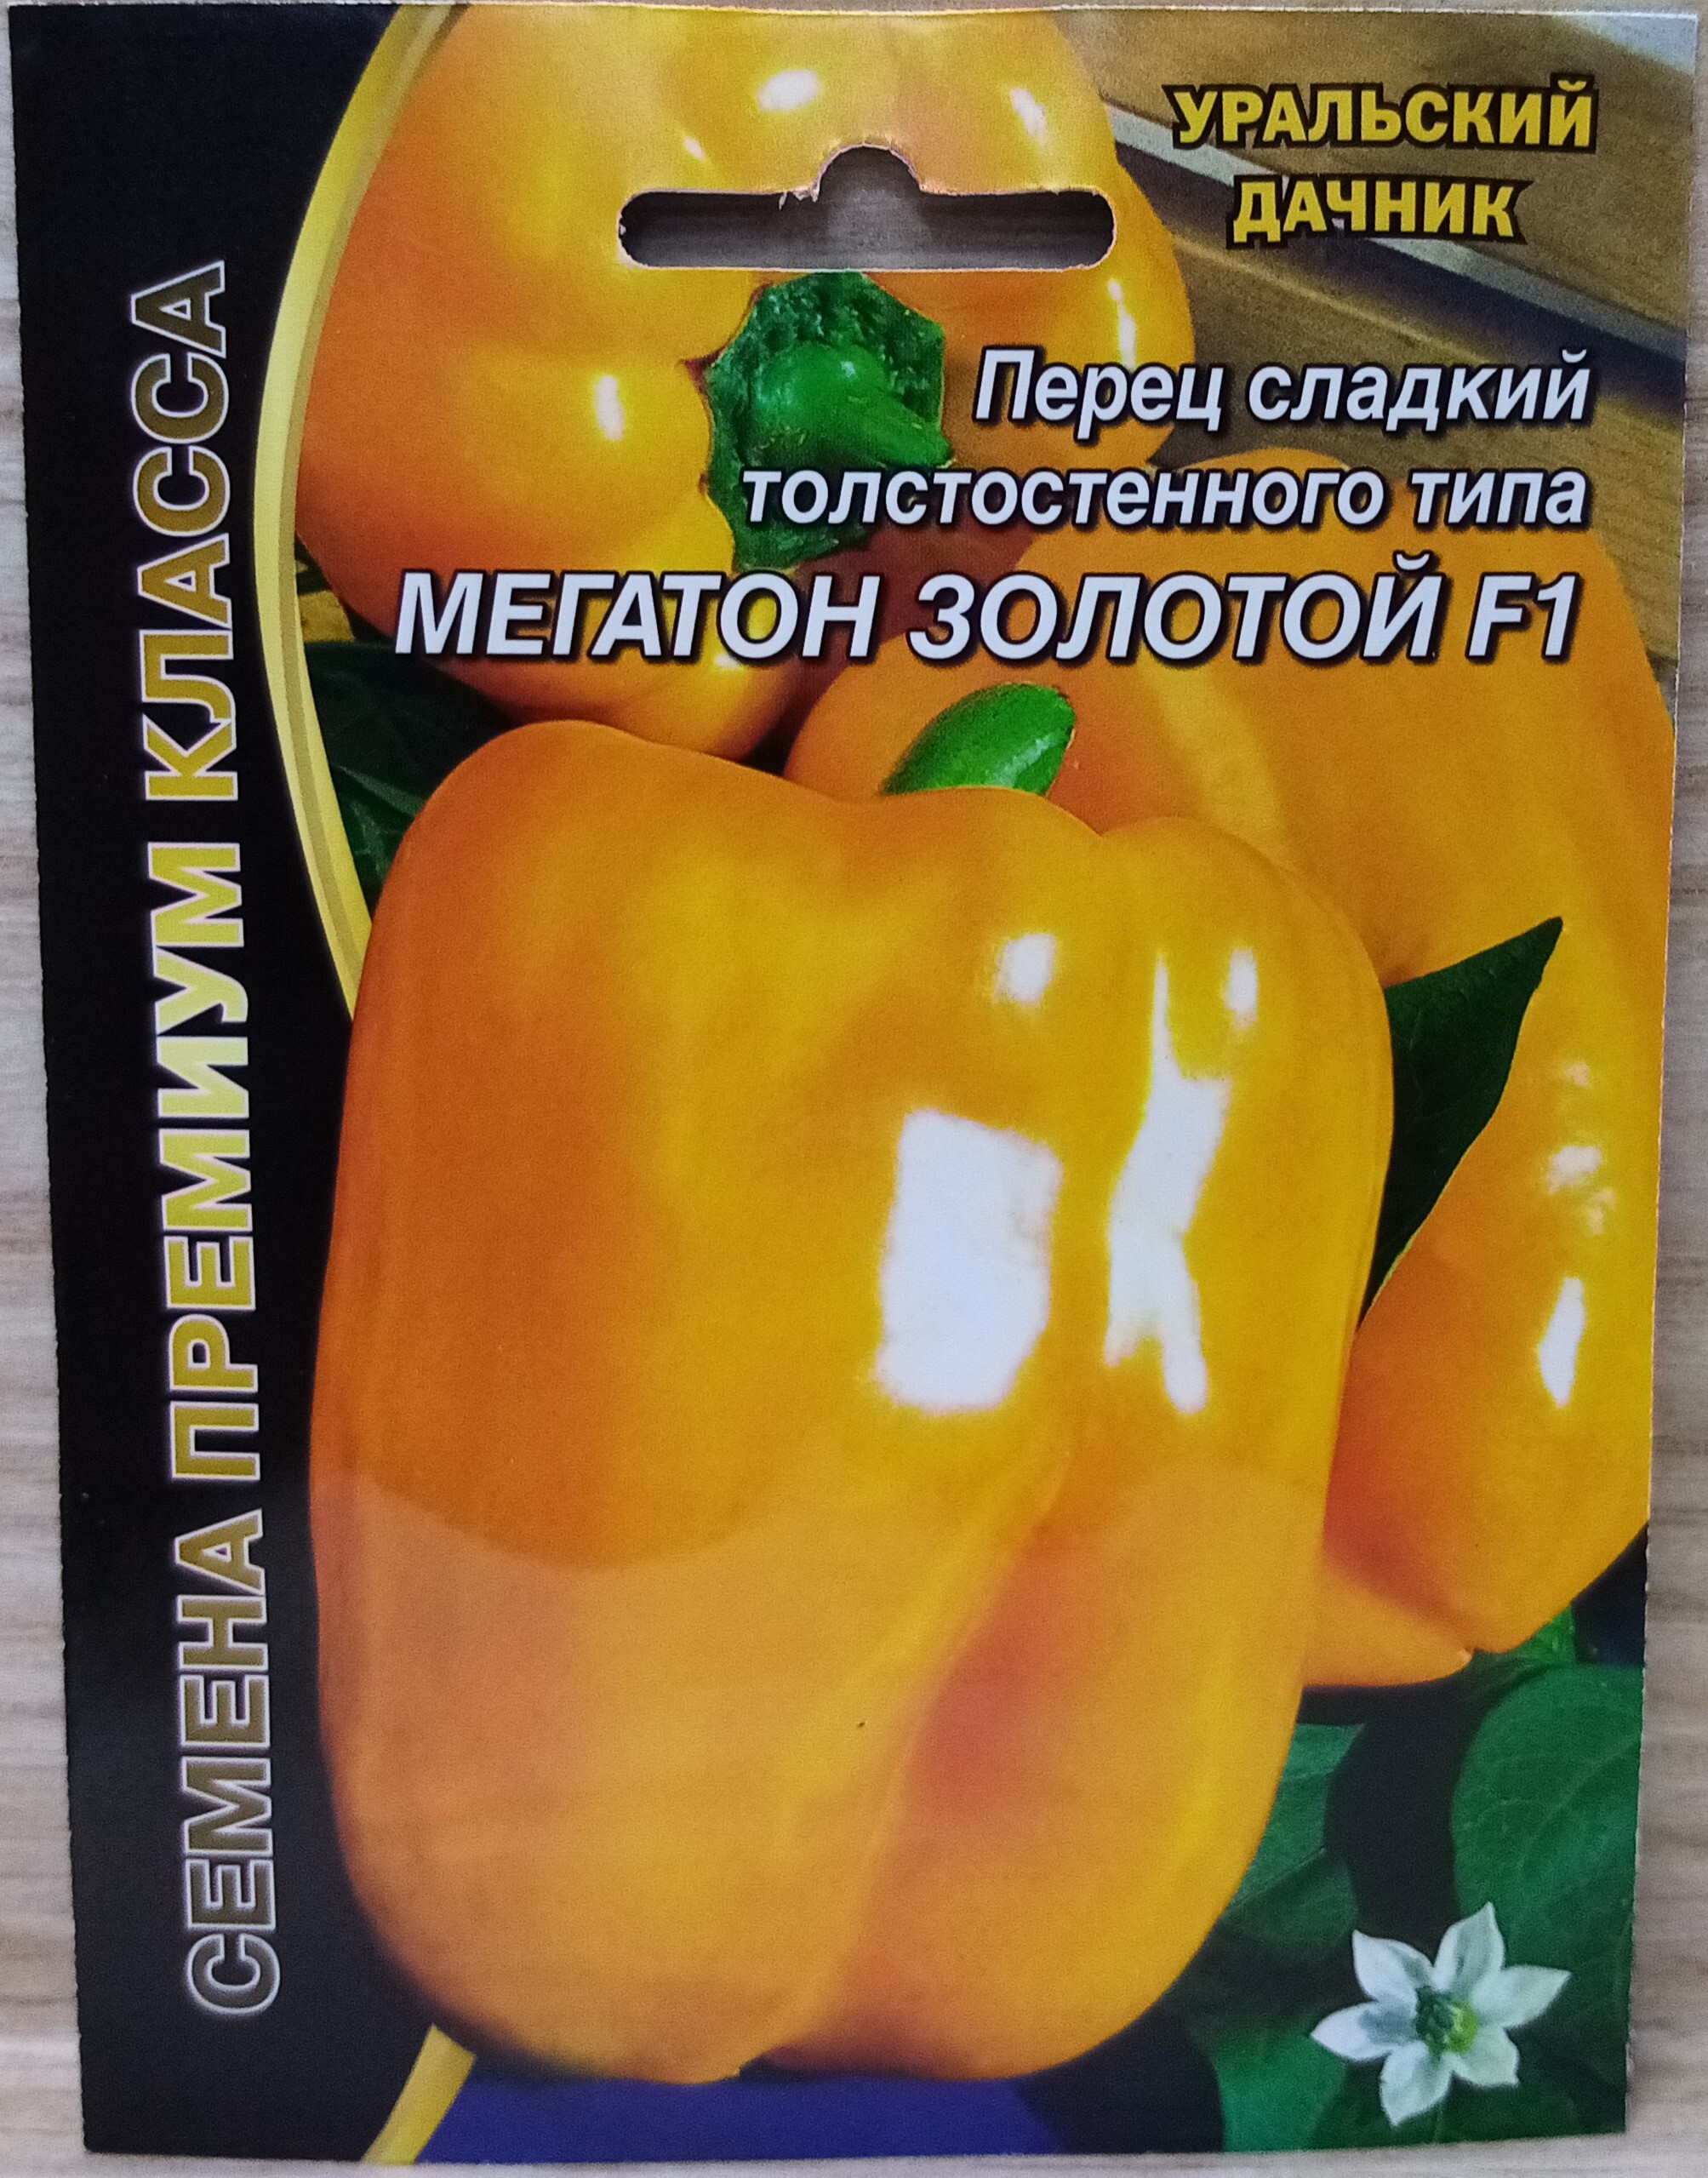 Перец сладкий Мегатон оранжевый f1